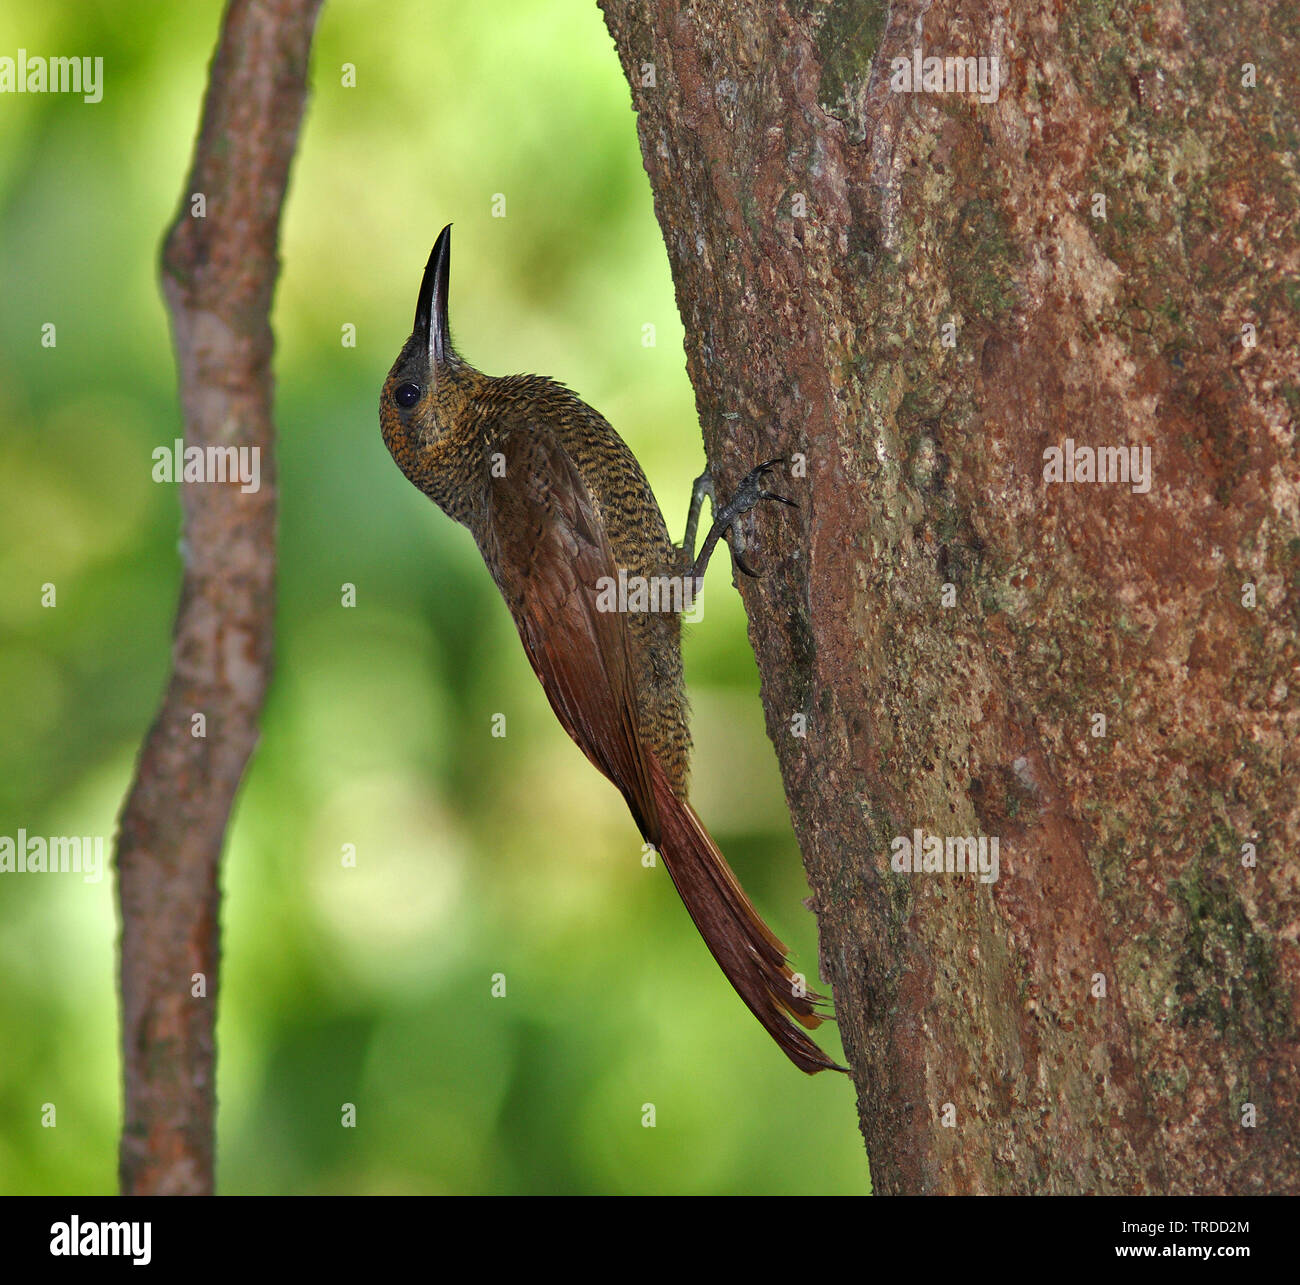 Northern barred woodcreeper (Dendrocolaptes sanctithomae), Suedamerika Stock Photo